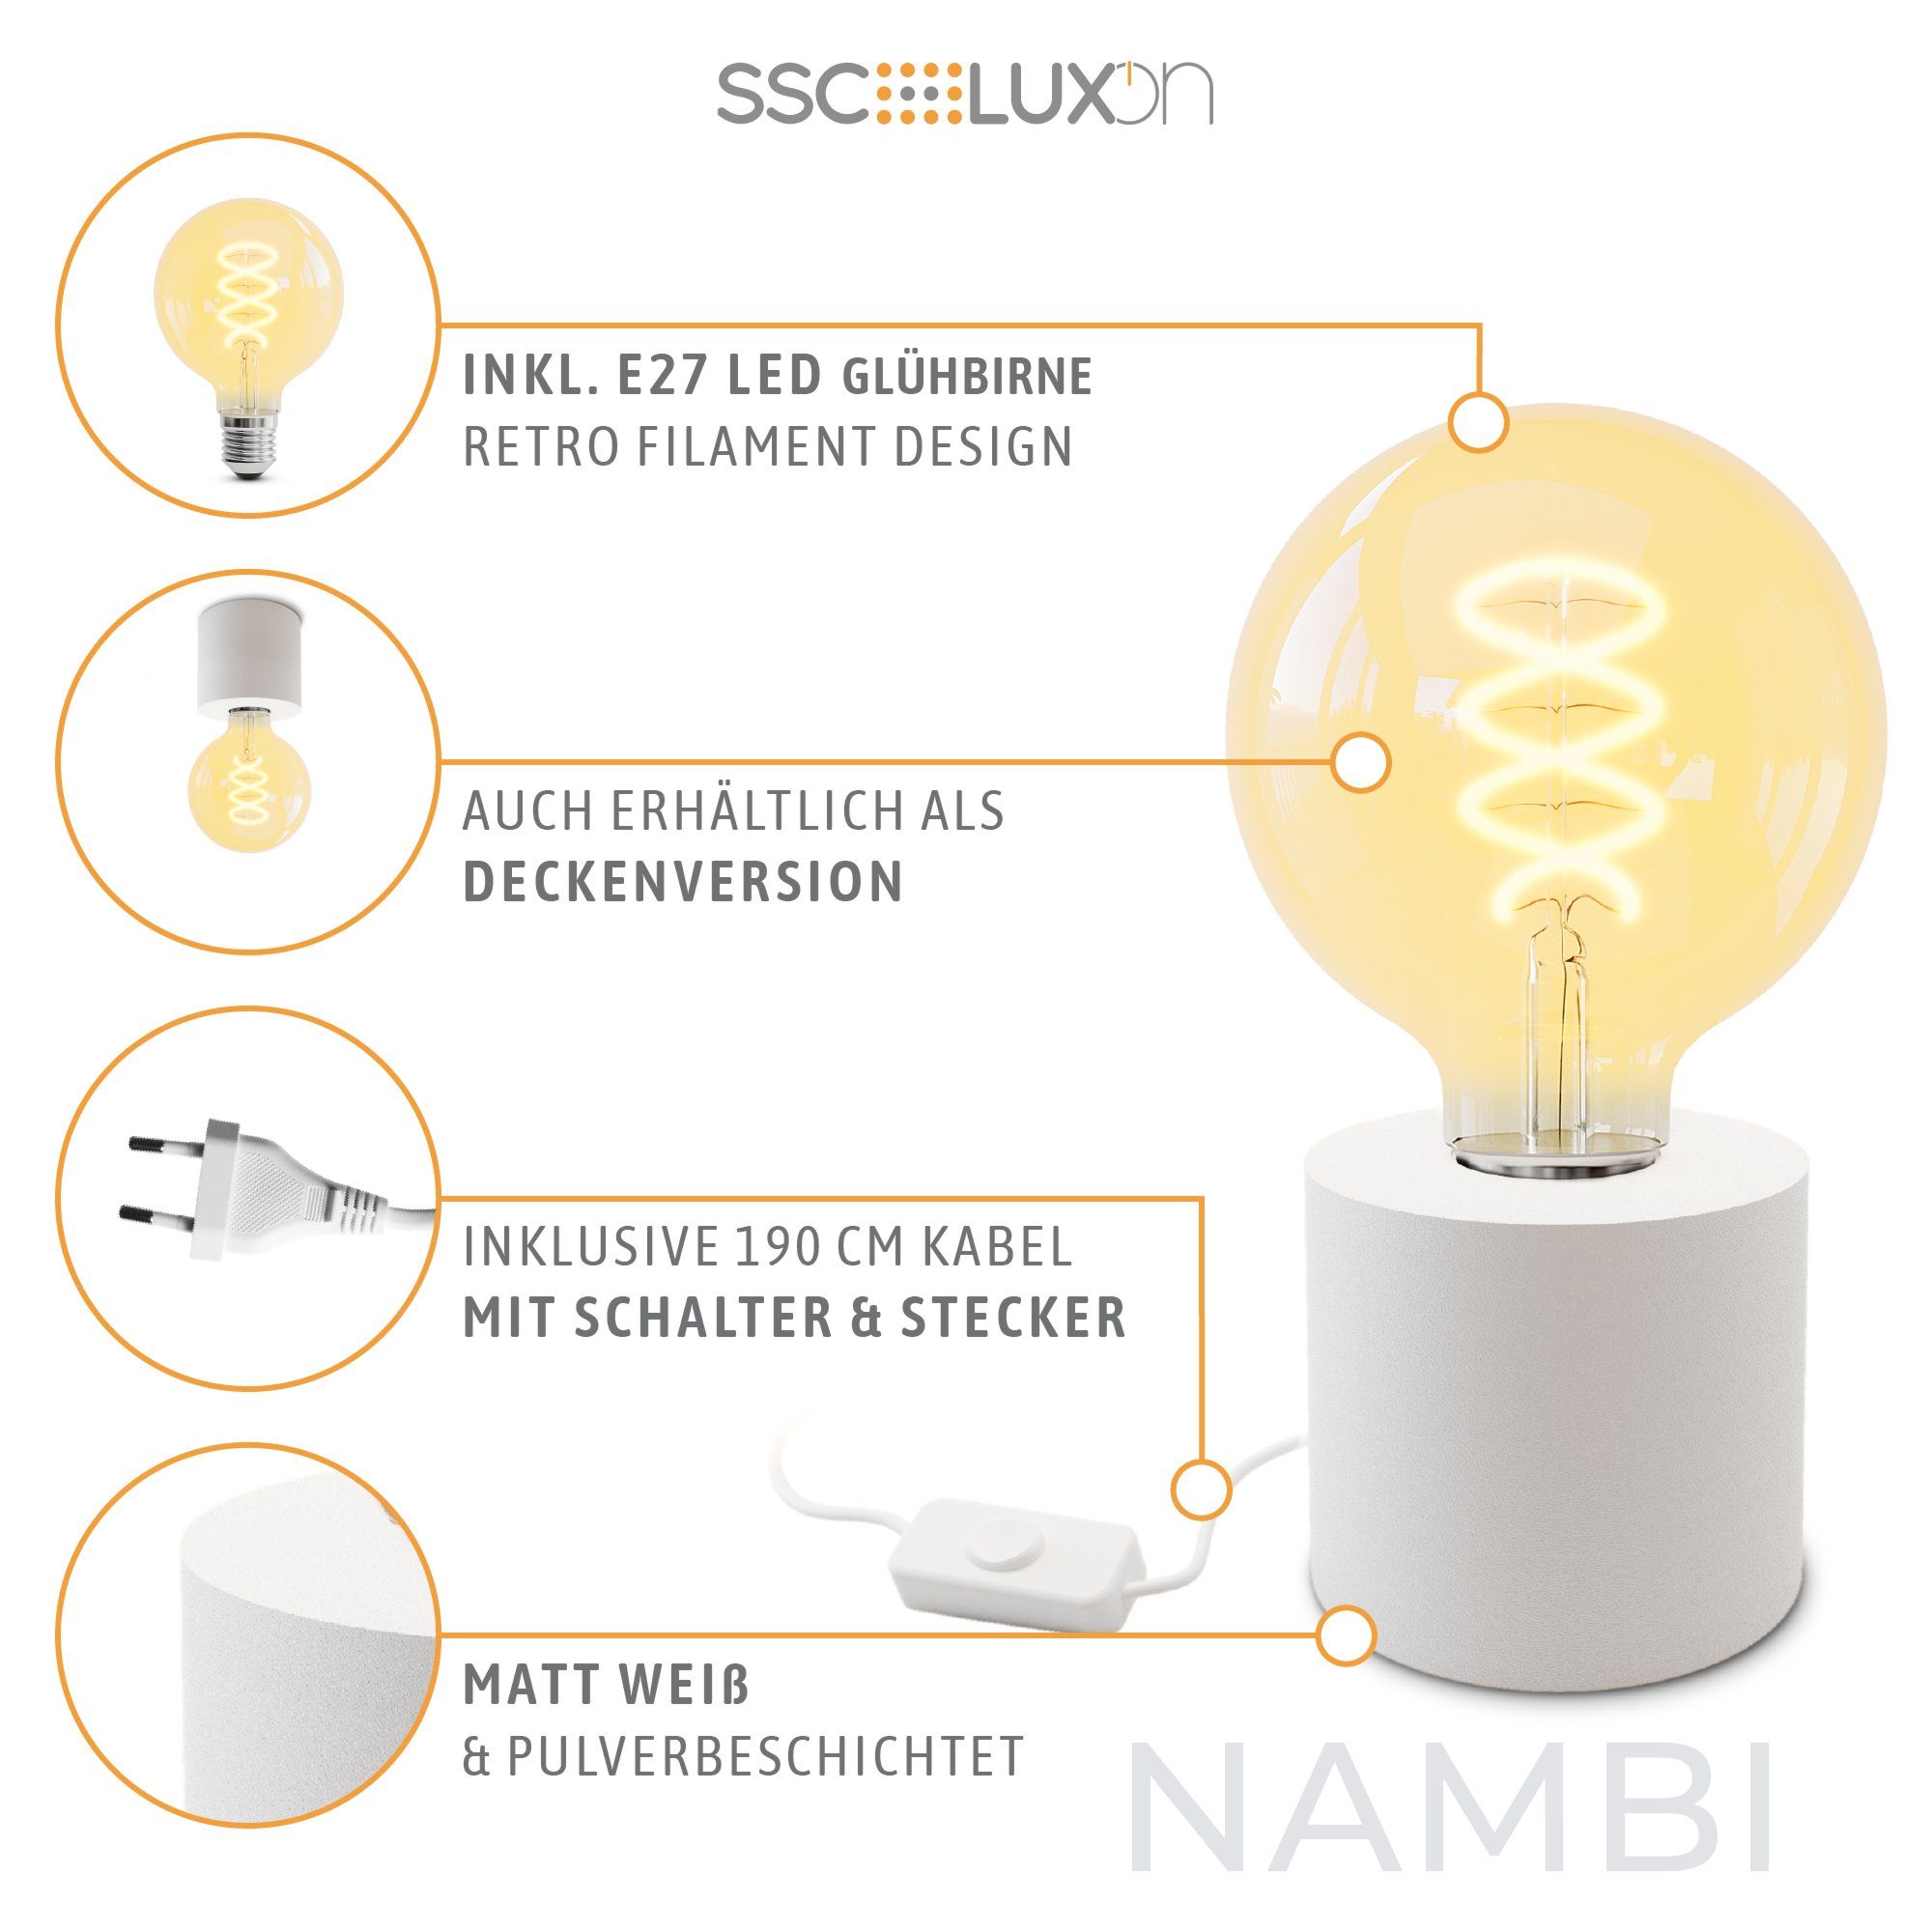 SSC-LUXon LED Bilderleuchte NAMBI Steckerkabel LED weiss mit Warmweiß Tischlampe mit & Globe Wand- Extra E27